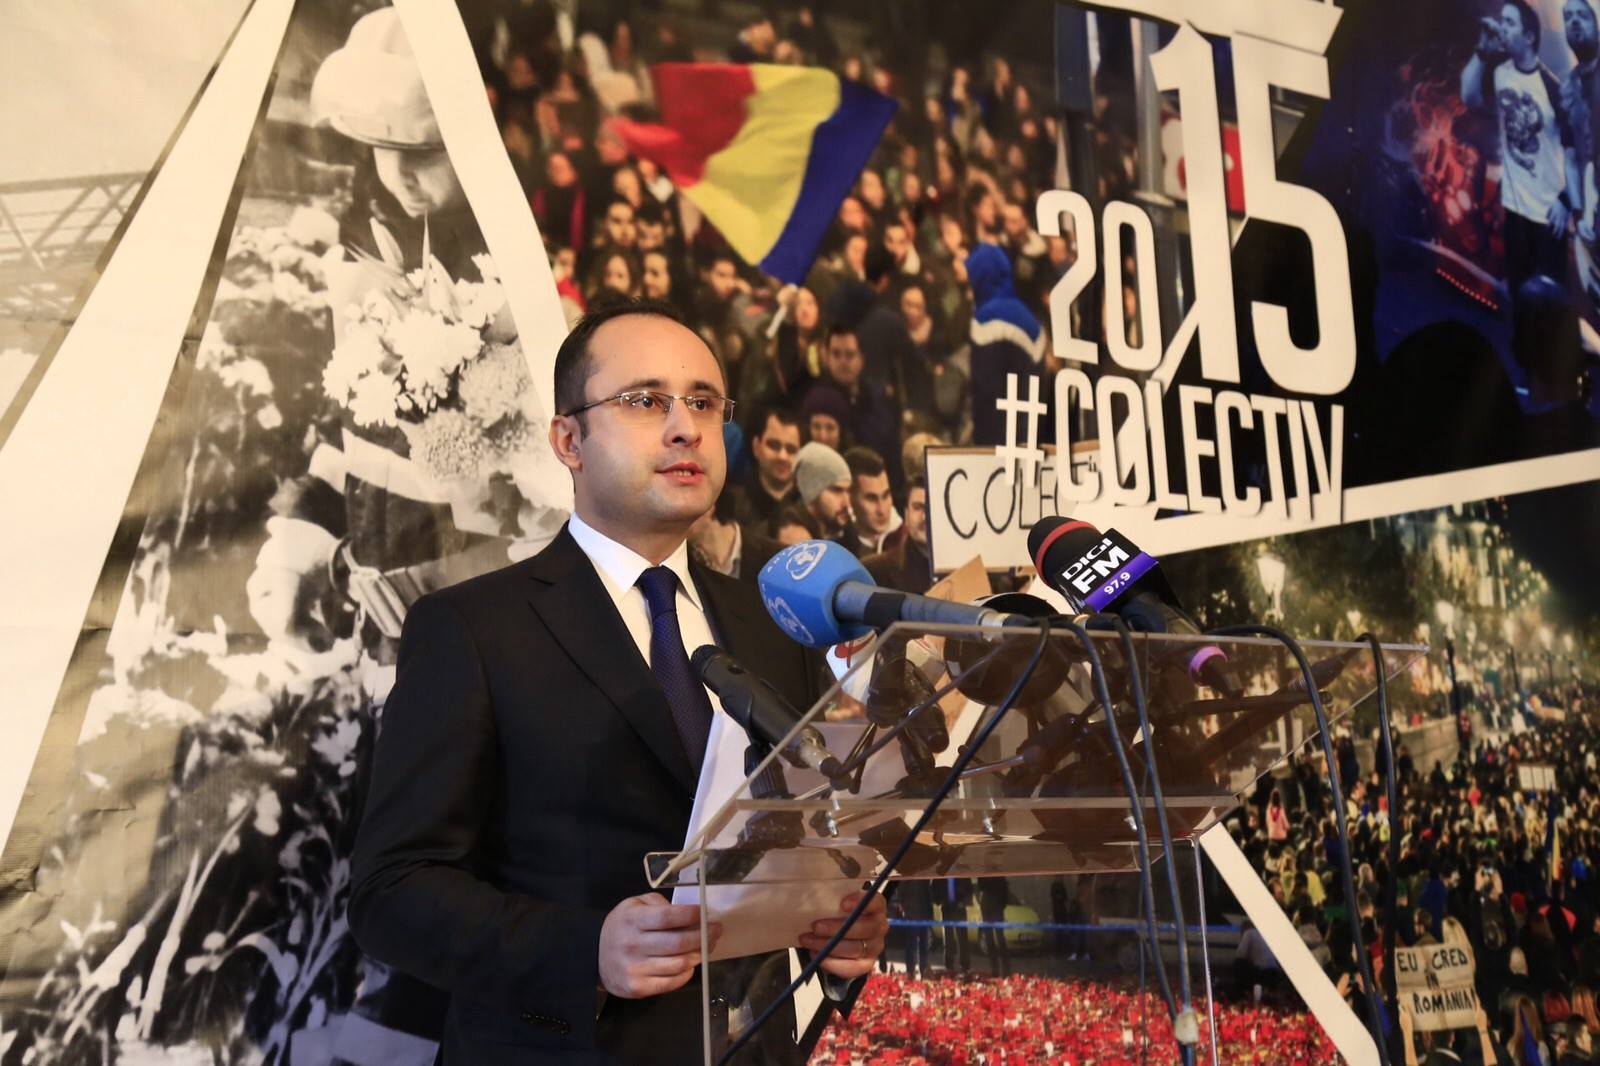 Cristian Busoi a folosit imagini cu tragedia din Colectiv in scop electoral. Politicianul si-a cerut scuze. FOTO - Imaginea 2